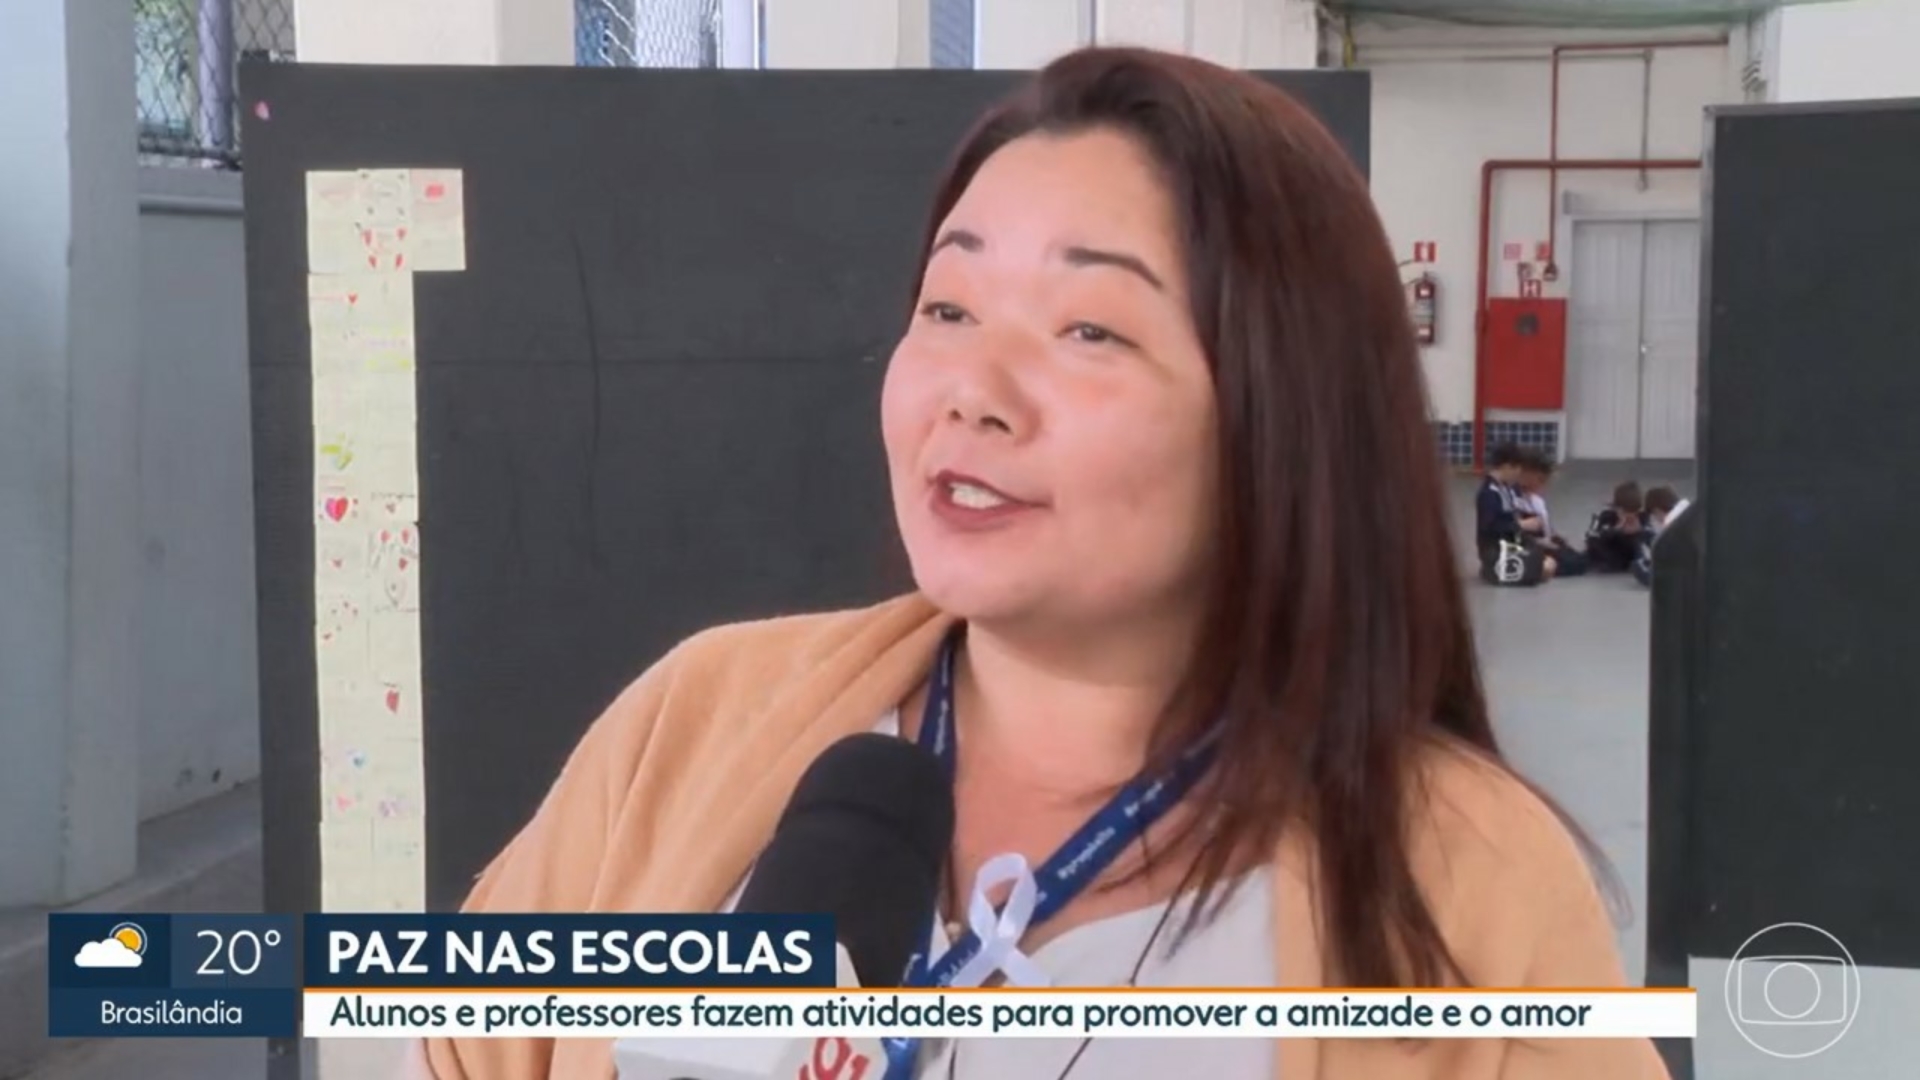 Atividades de combate à violência e propagação da paz no Colégio Santa Amália é destaque na Globo